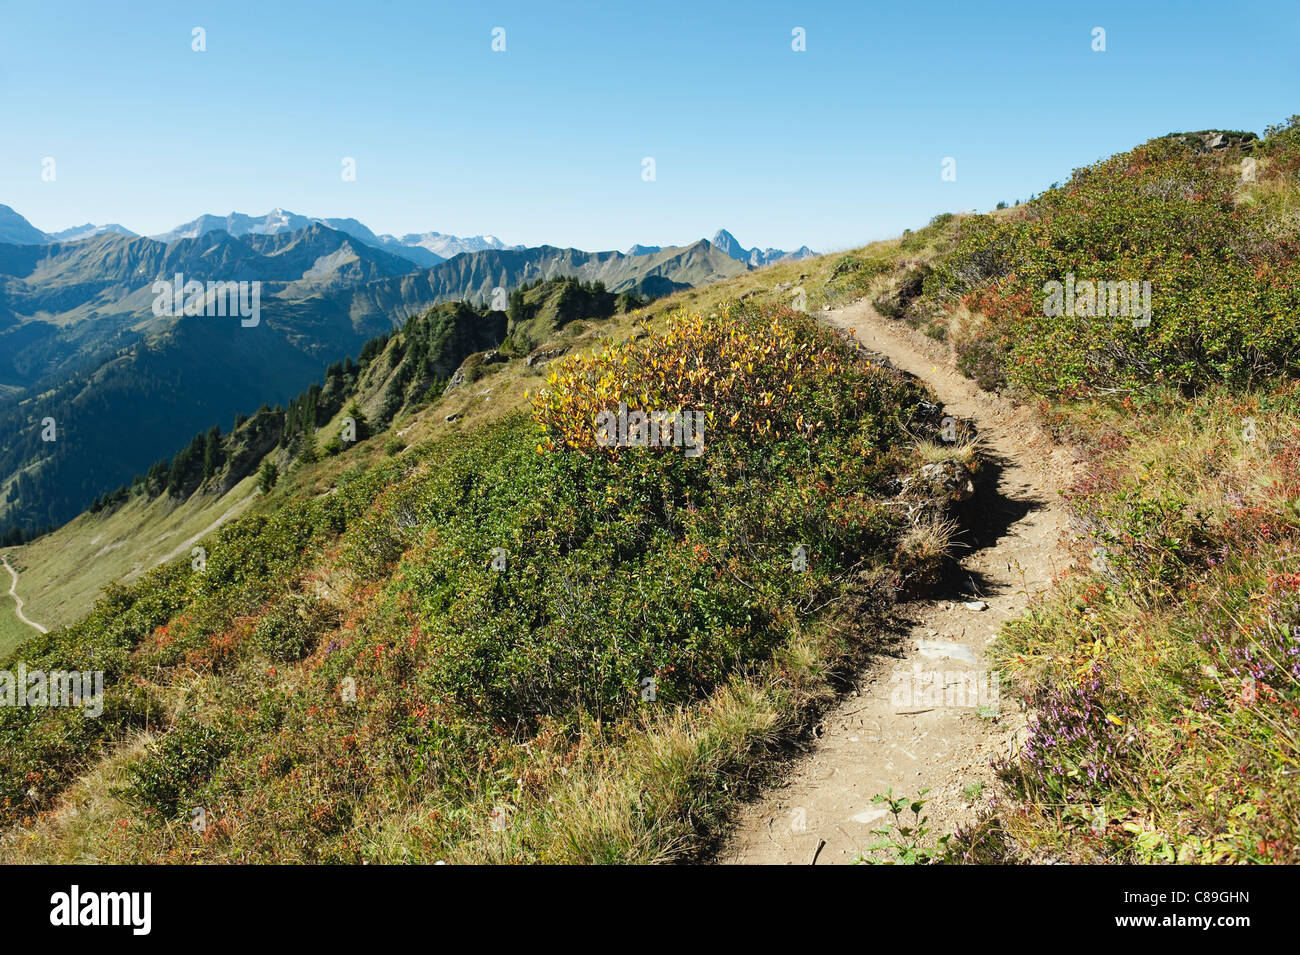 Austria, Kleinwalsertal, View of hiking trail on mountain Stock Photo